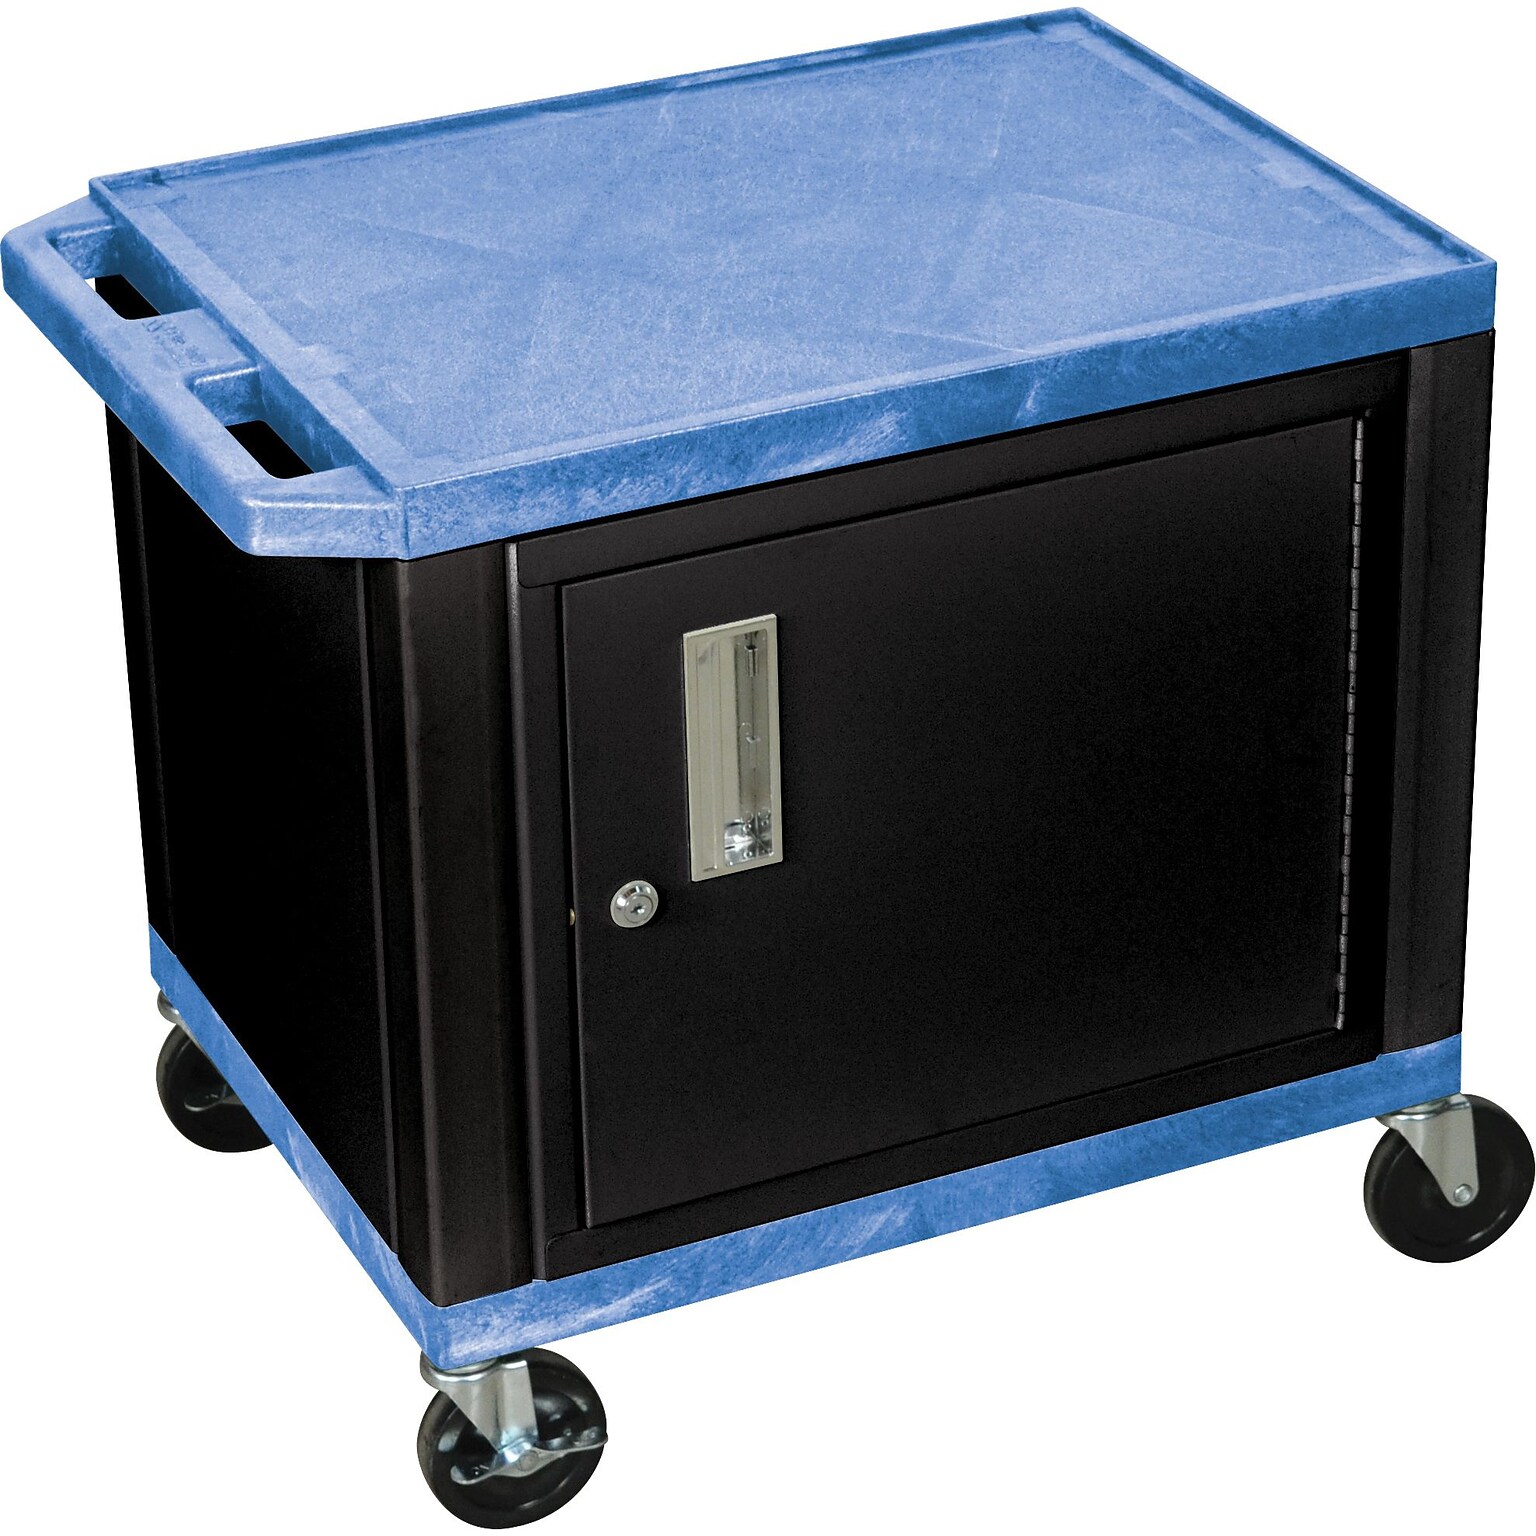 H Wilson 26H 2 Shelves Tuffy AV Carts W/Black Cabinet, Blue